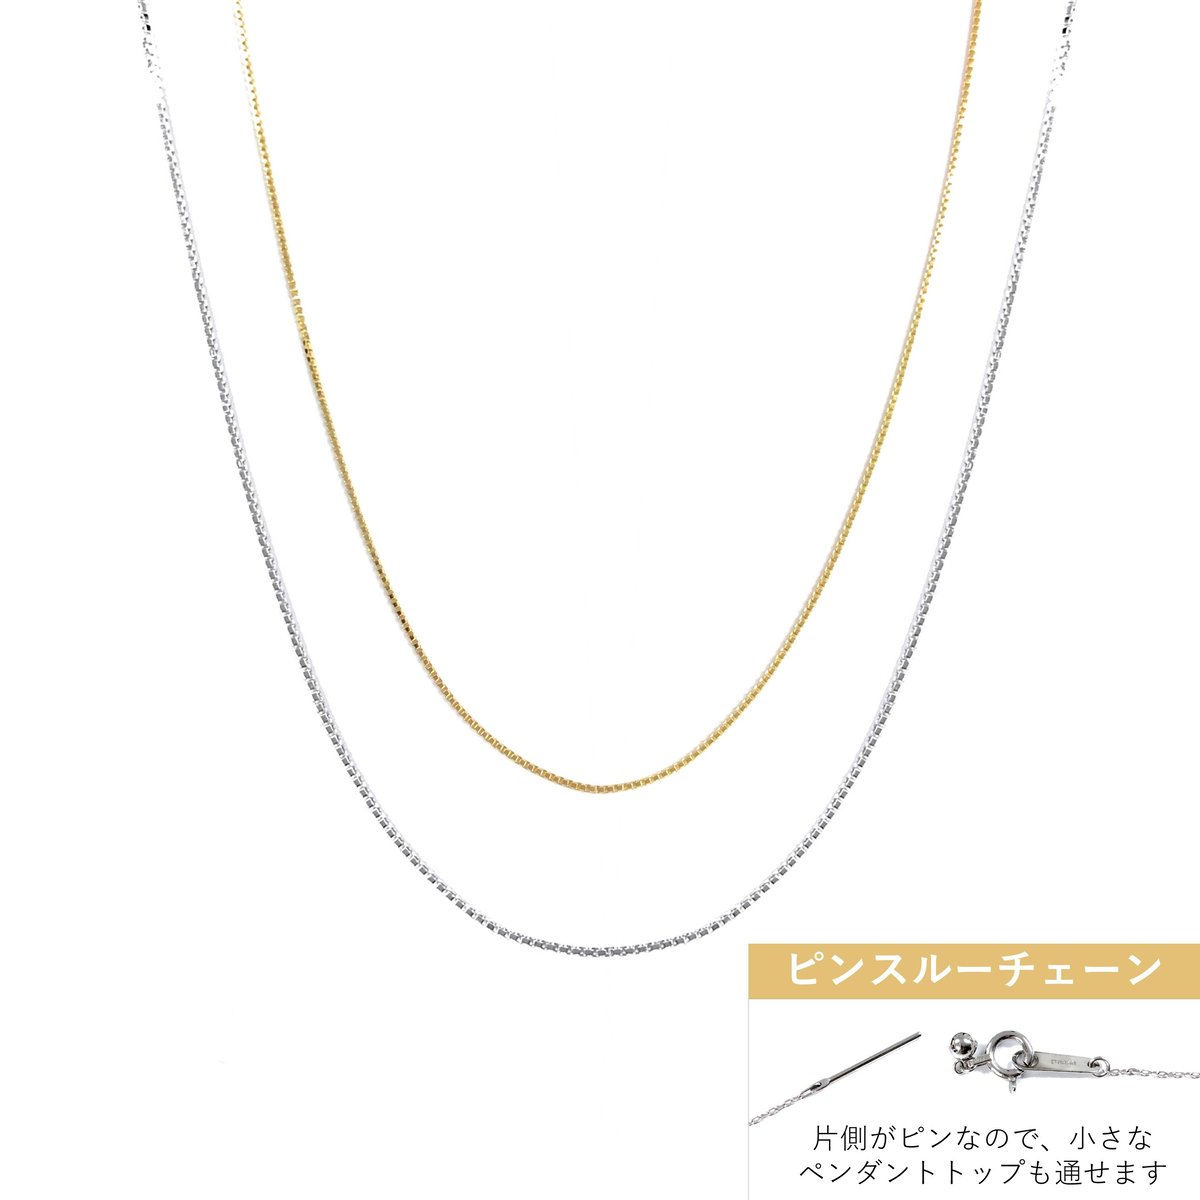 K10 YG/ WG ピンスルー ネックレス ( 45cm ) / アズキチェーン | 【公...